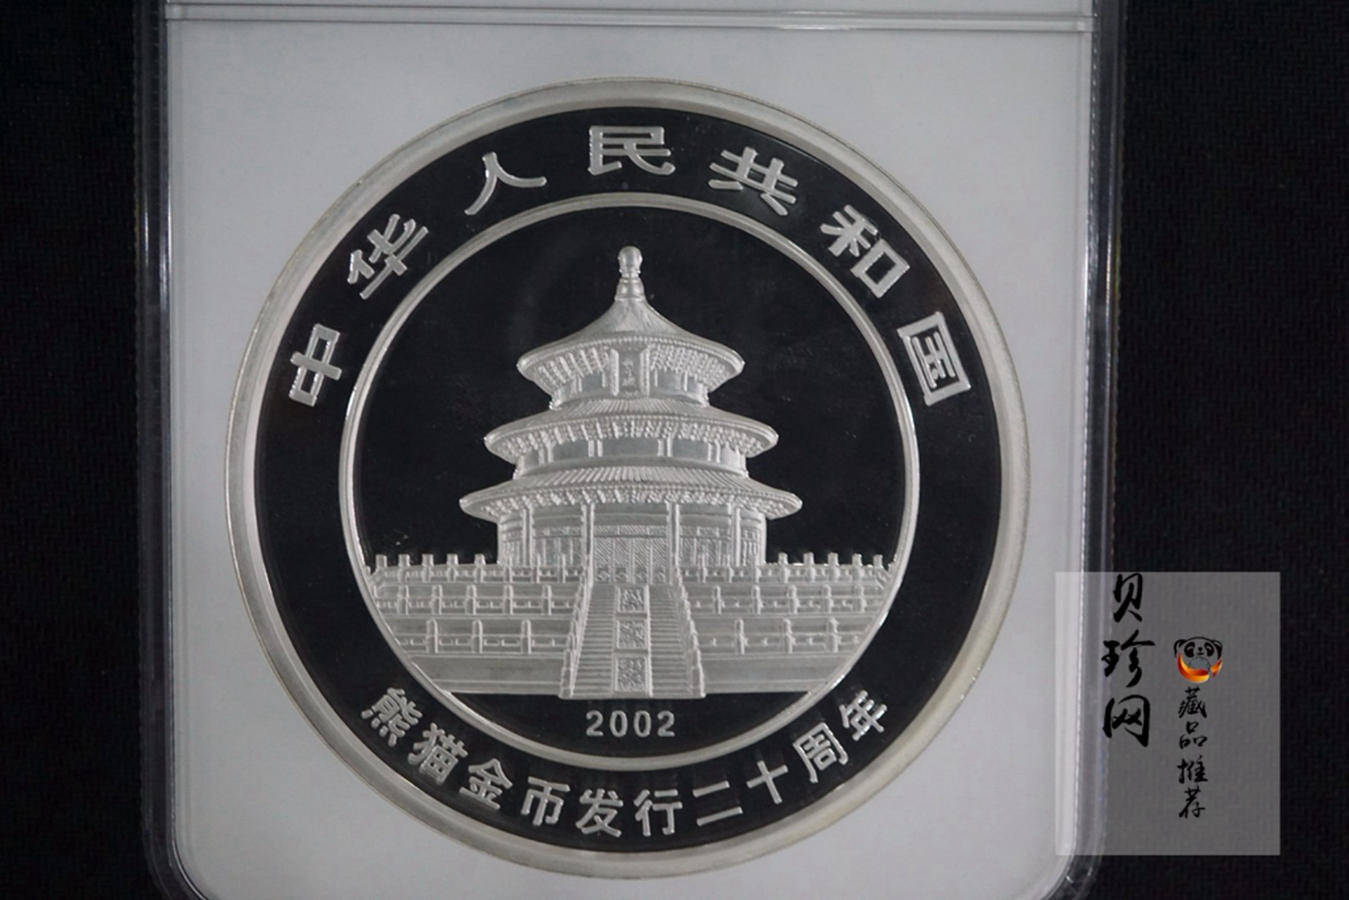 【020201】2002年中国熊猫金币发行20周年银铂纪念币1公斤镶金银币